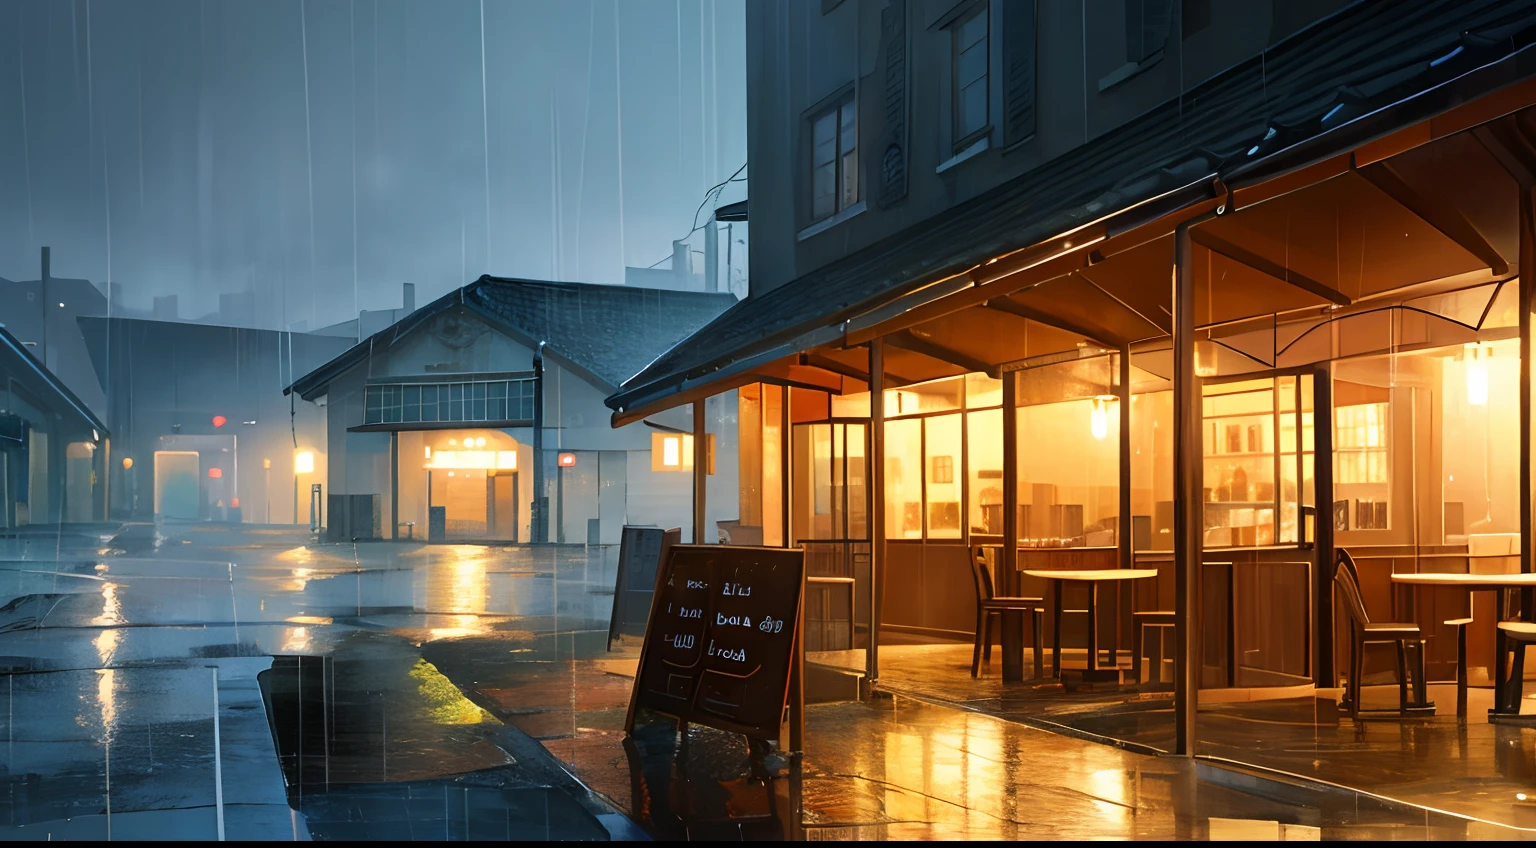 비오는 날 카페 일러스트 그래픽 최고 품질 풍경 비오는 날 따뜻한 빛 카페